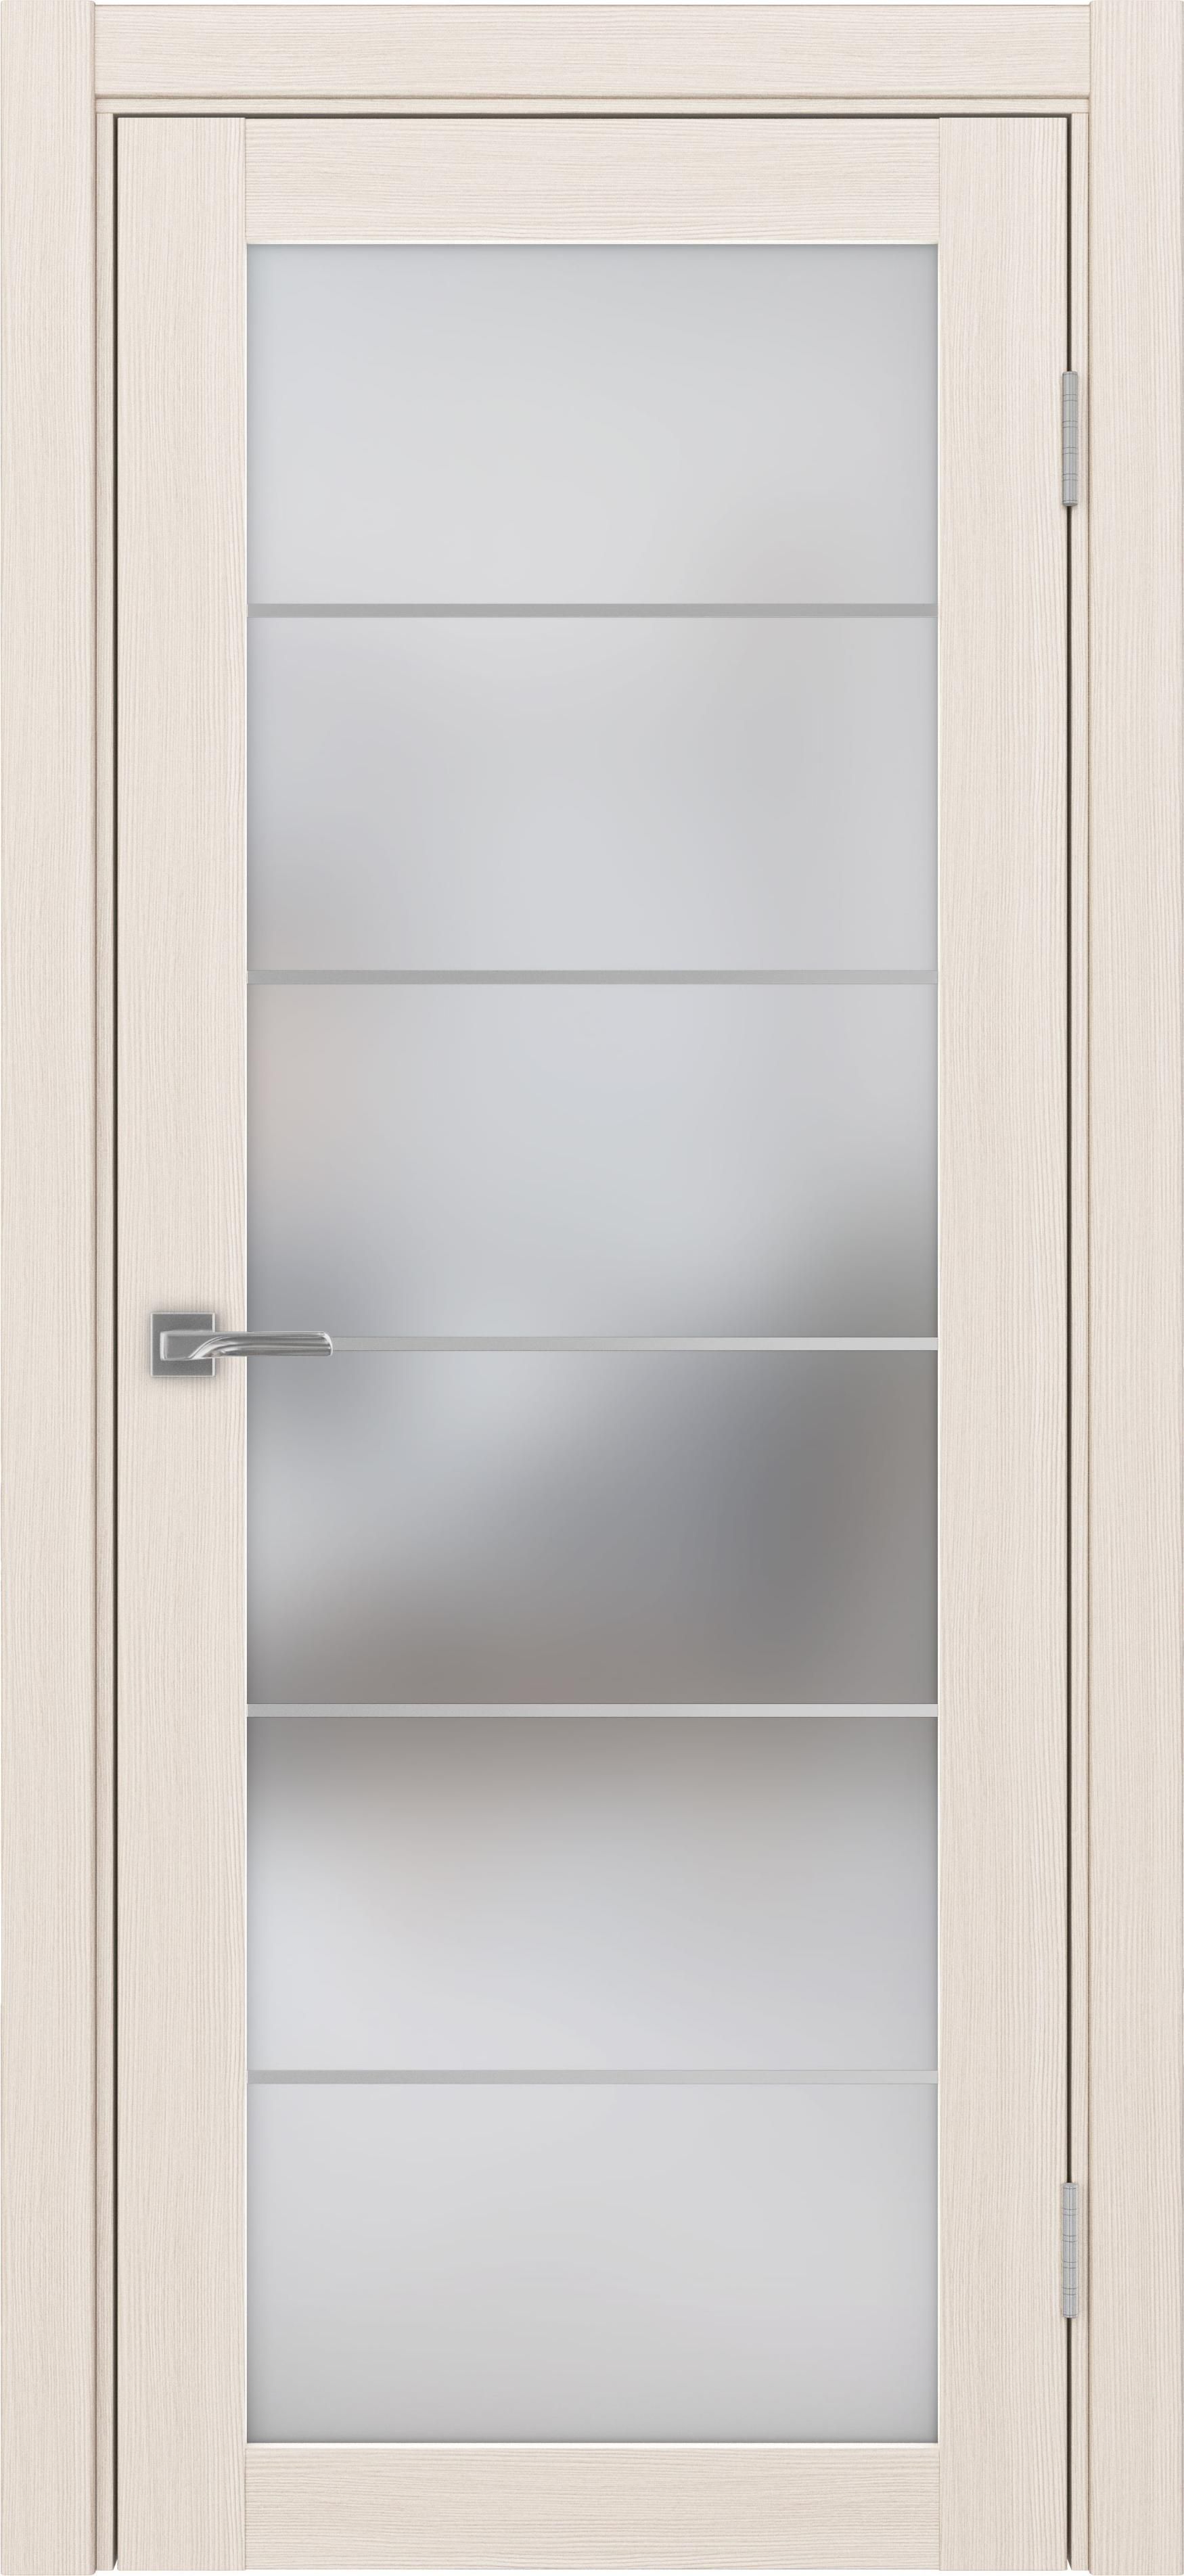 Межкомнатная дверь «Турин 501.2 АСС Ясень перламутровый» стекло сатин с алюминиевыми молдингами